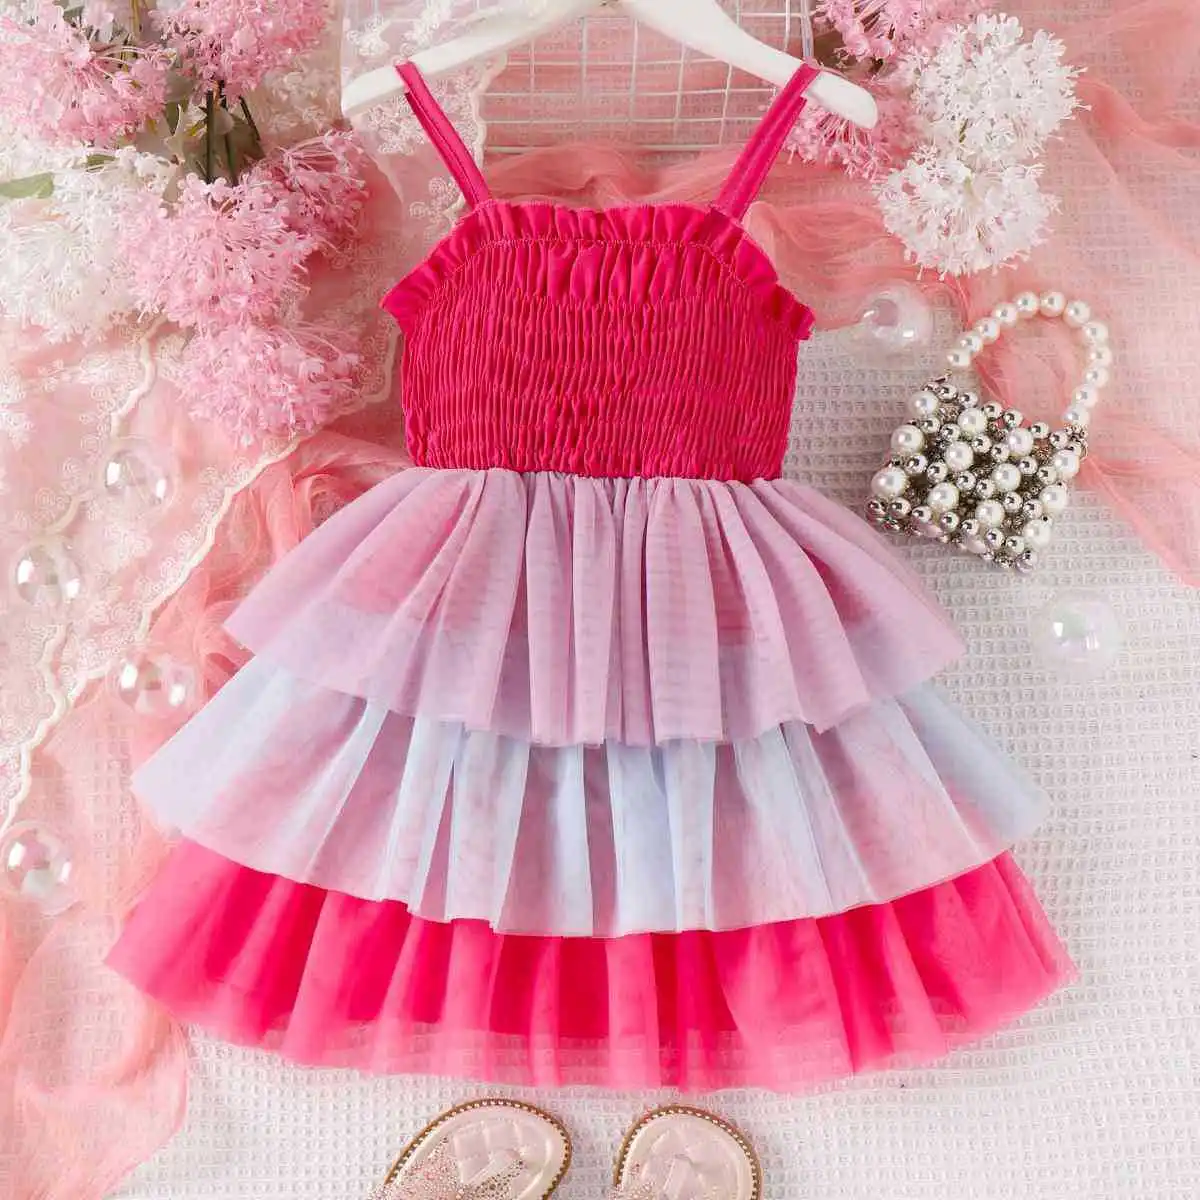 Gökkuşağı Örgü Elbise Çocuklar için Çocuk Kız Yaz Kolsuz Kayış Kayma Elbise Pilili Kek Prenses Elbiseler Bebek Kızlar için Görüntü 0